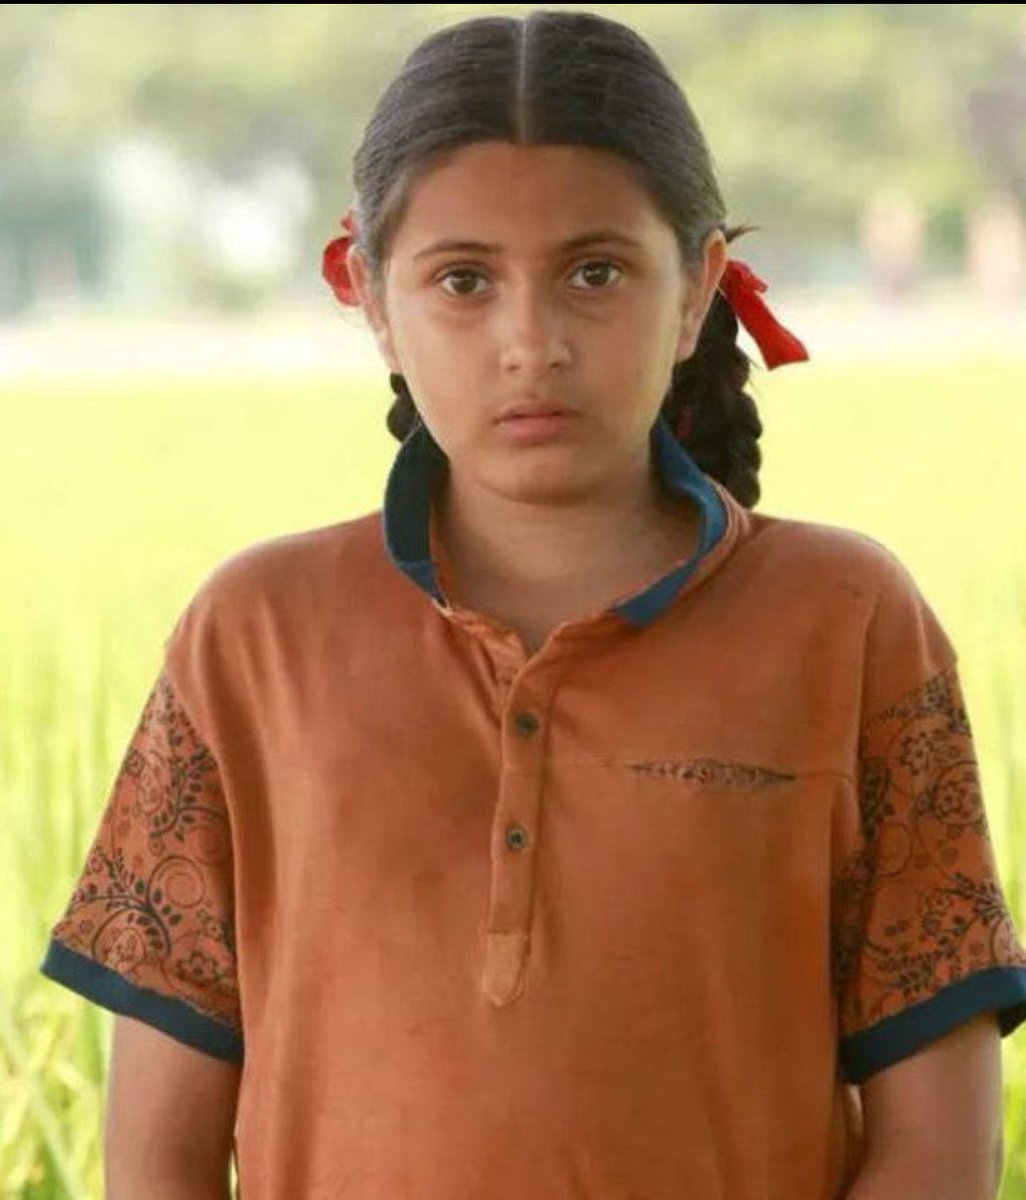 दंगल फ़िल्म में मेरी छोटी बहन बबीता फोगाट का बचपन का रोल निभाने वाली सुहानी भटनागर का इतनी कम उम्र में दुनिया से चला जाना बहुत दुःखद है 💔💔 भगवान इस दुःख की घड़ीं में पूरे परिवार को हिम्मत दें 🙏🏽😞